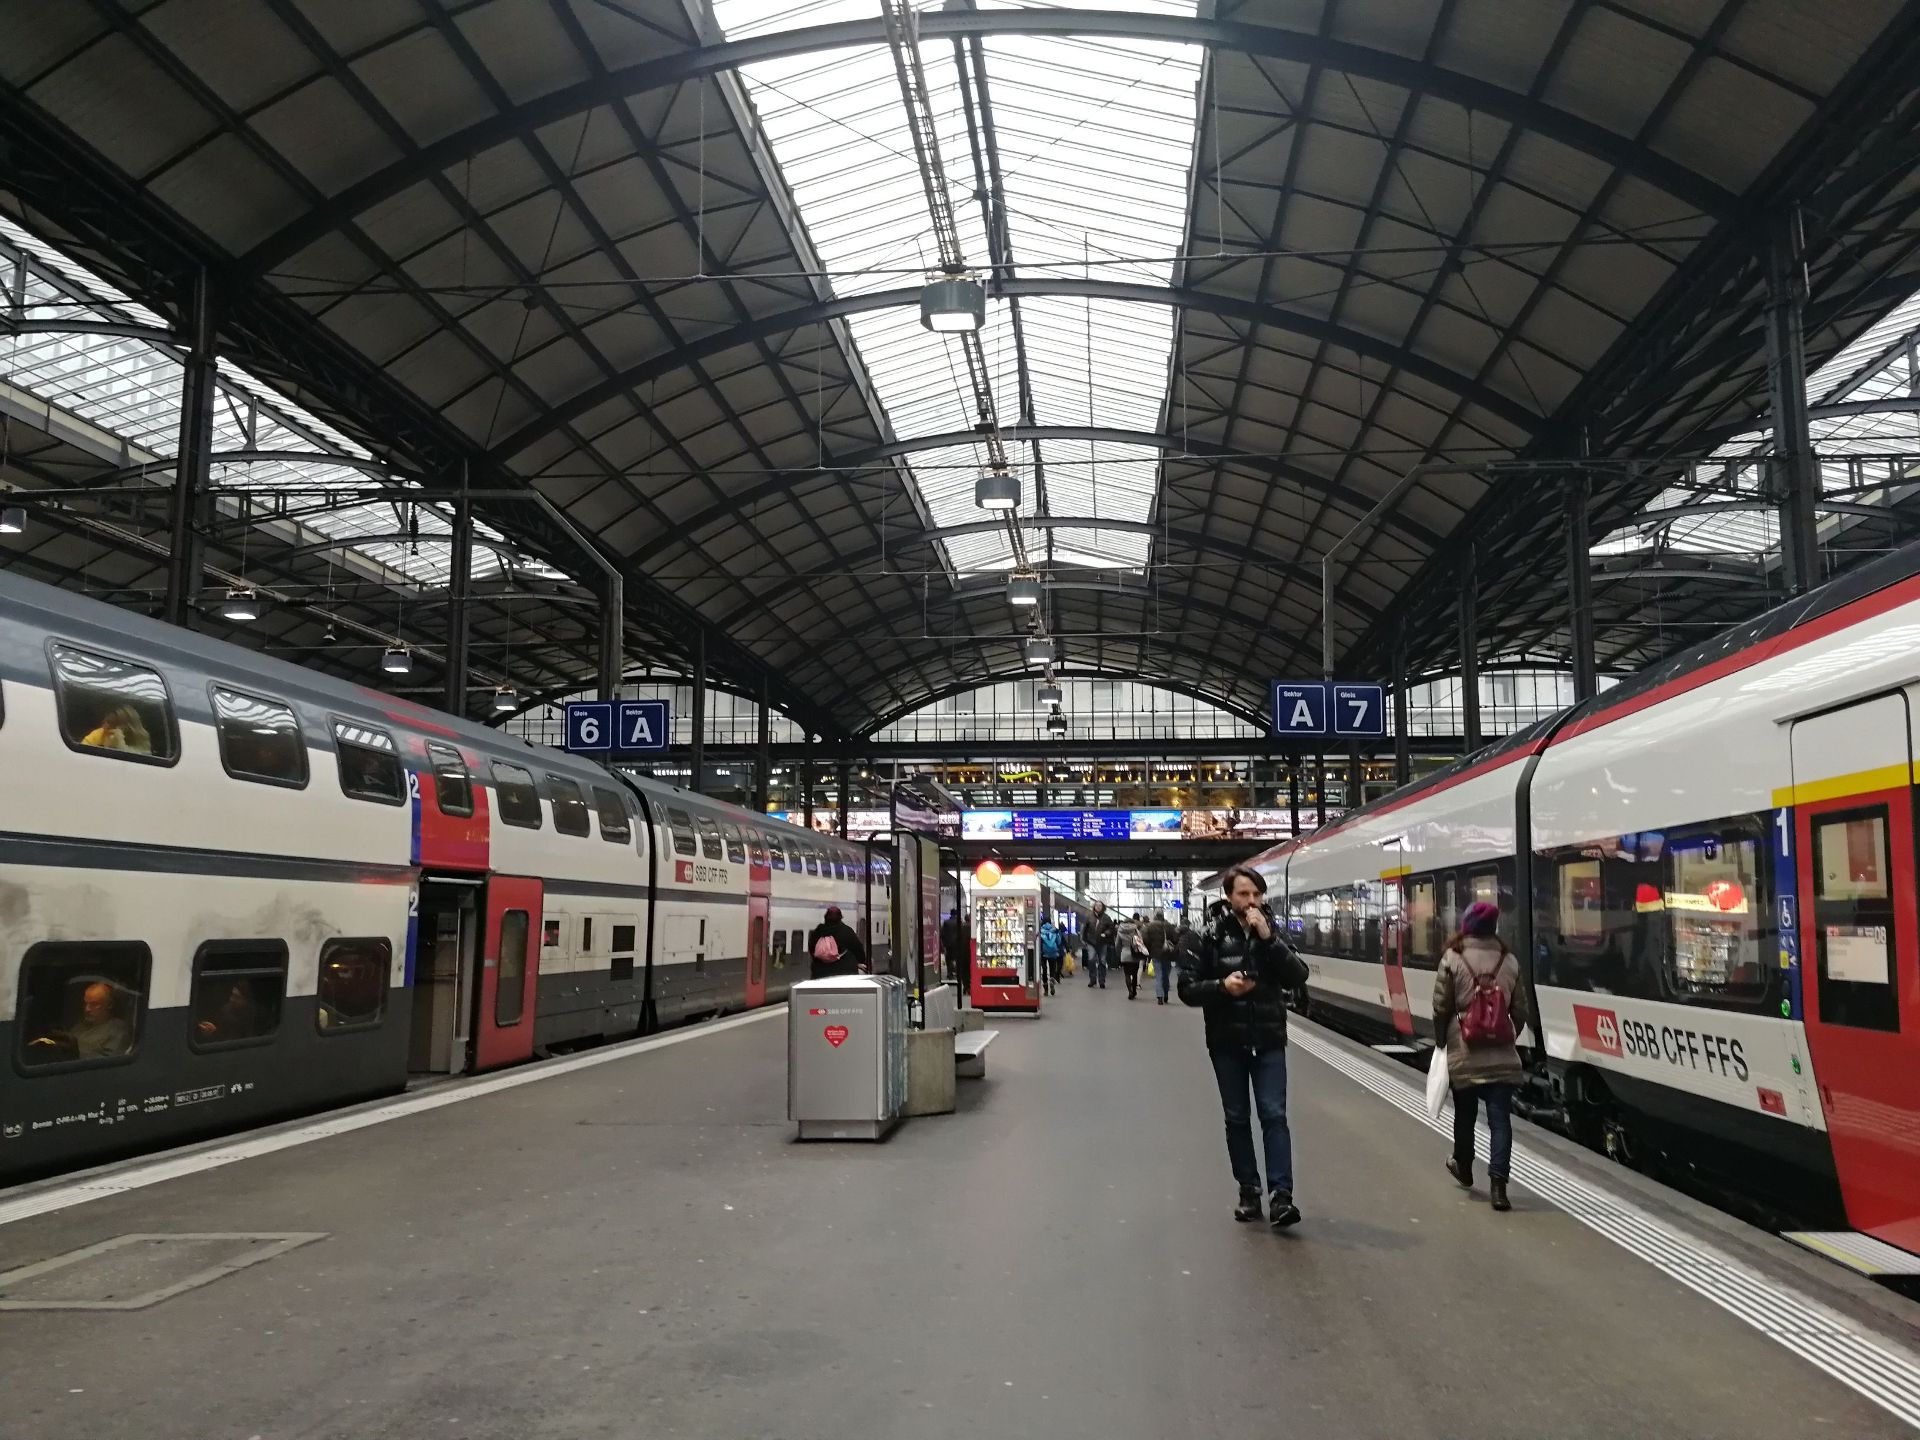 琉森火车站是瑞士的大型中转站之一，车站内有很多月台，不同月台有开往不同城市的车次。车站内很方便，月台